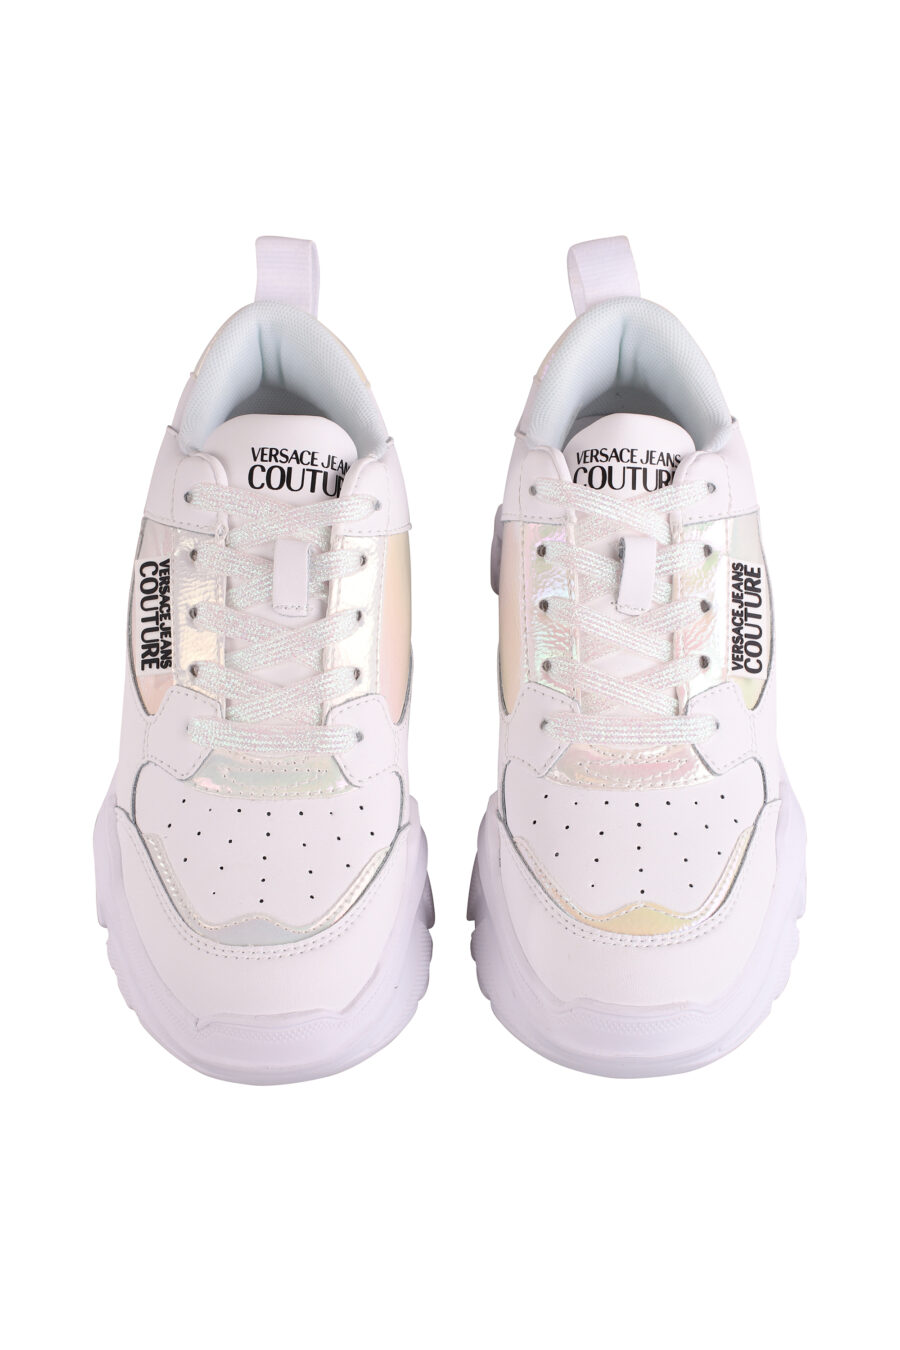 Zapatillas blancas con detalles en holograma y plataforma - IMG 9097